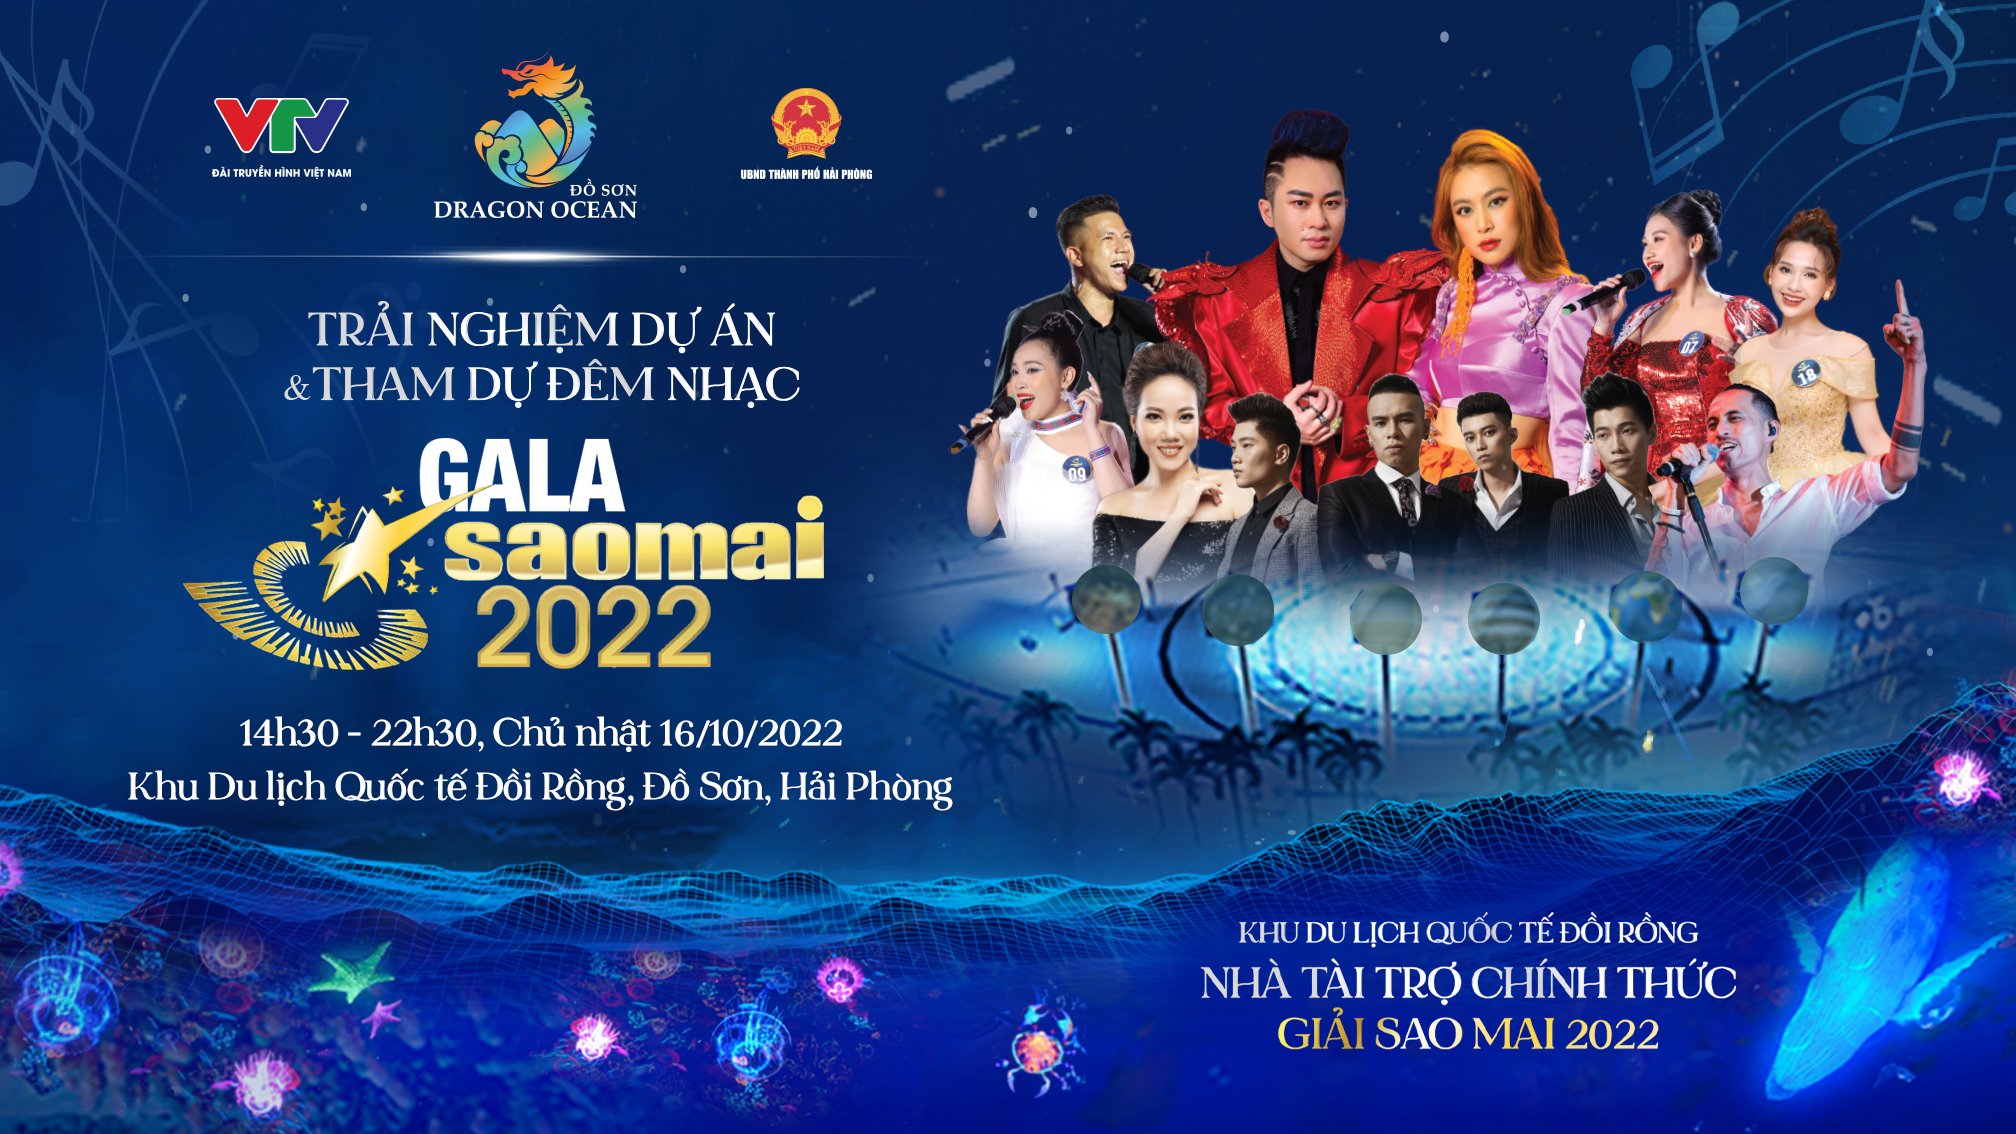 Dàn sao sẽ “đổ bộ” sân khấu Gala chung kết Sao Mai 2022 tại Đồ Sơn, Hải Phòng